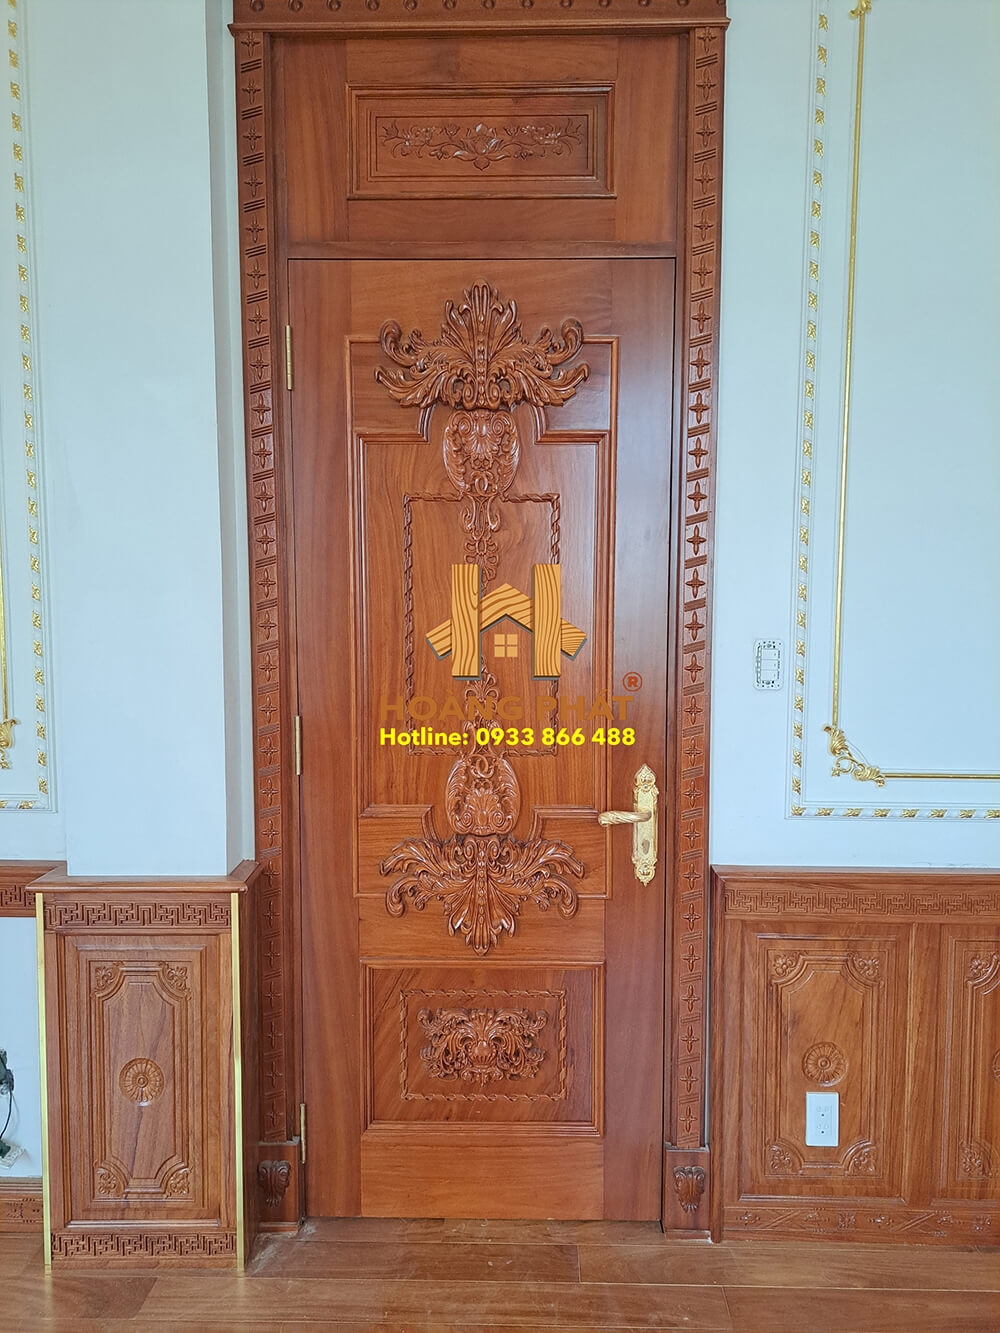 Hoàng Phát thi công trọn gói nội thất gỗ Gõ Đỏ Nam Phi cho biệt thự nhà chị Diệu tại Bình Chánh